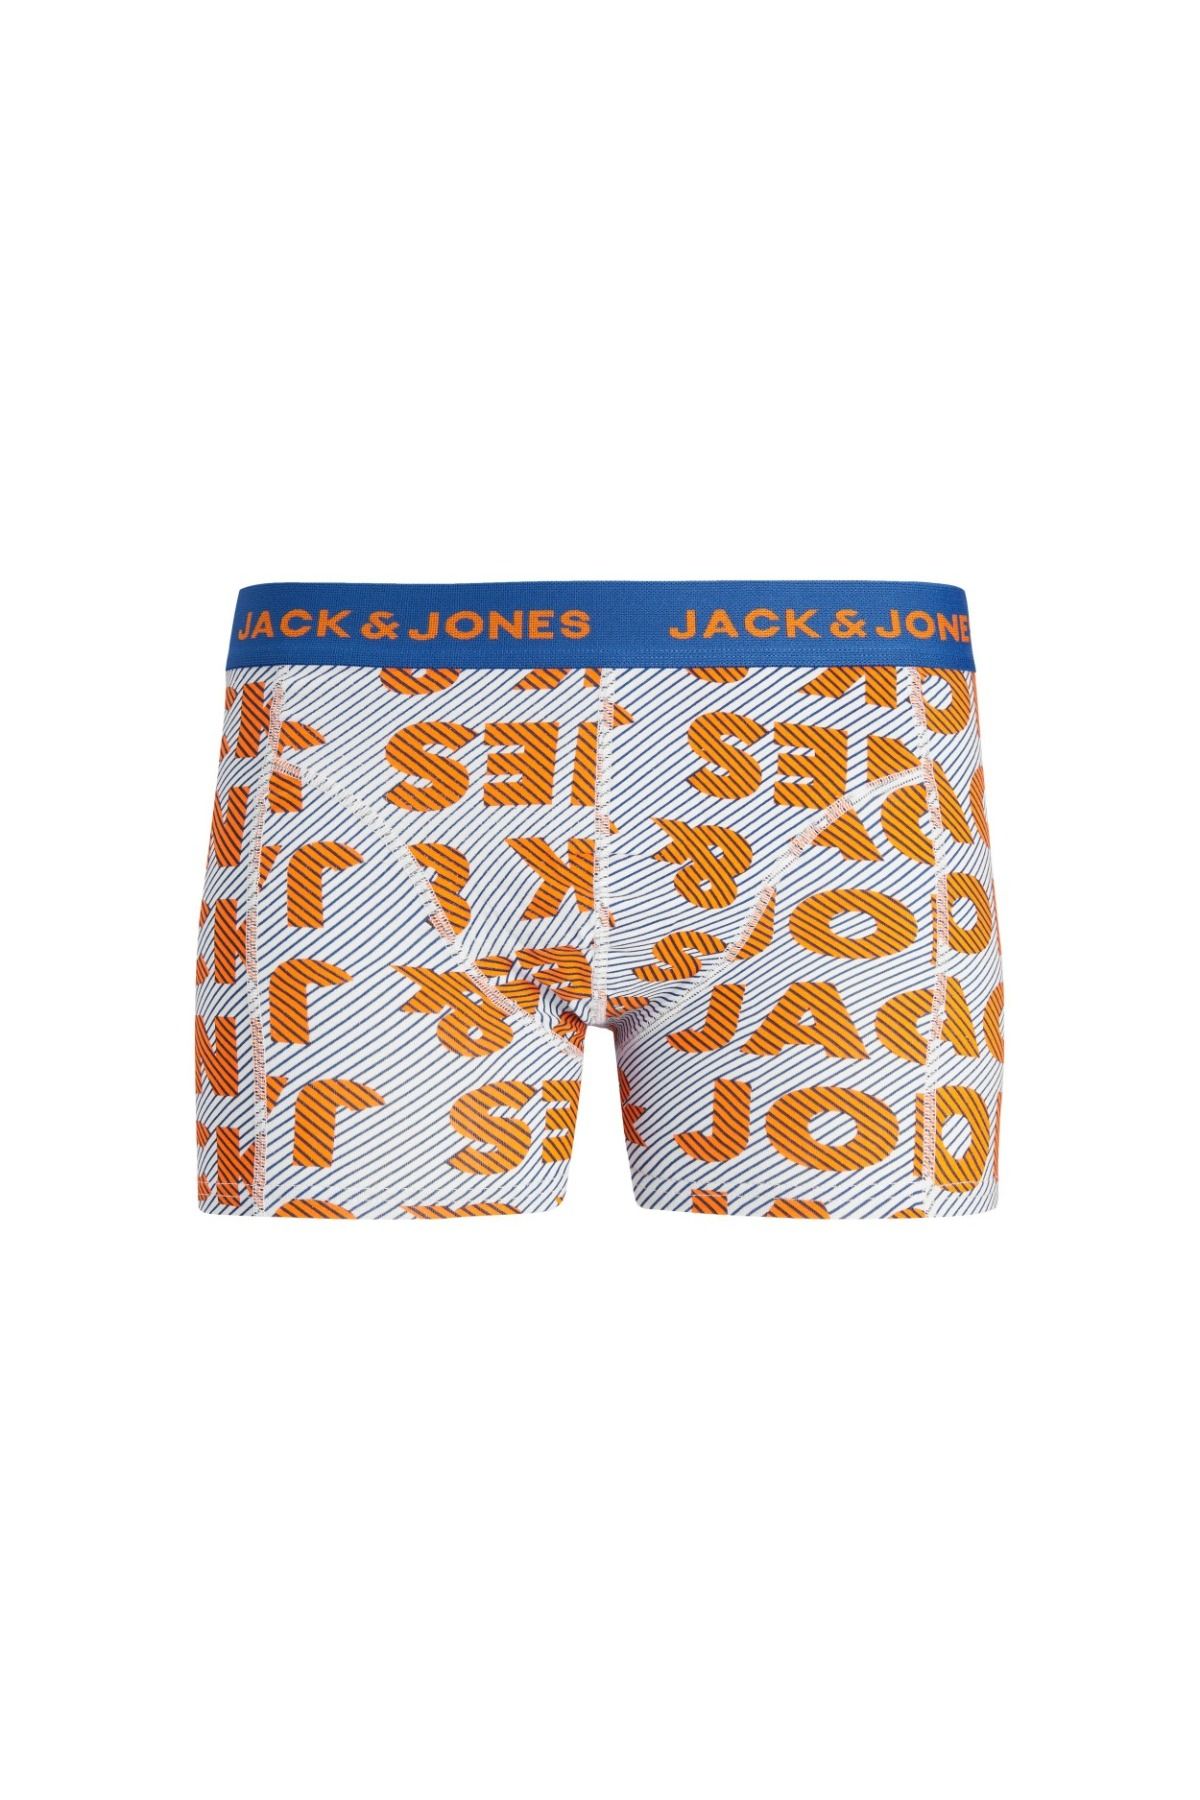 Jack & Jones Jack&jones Logo Illusion Erkek Çok Renkli Boxer